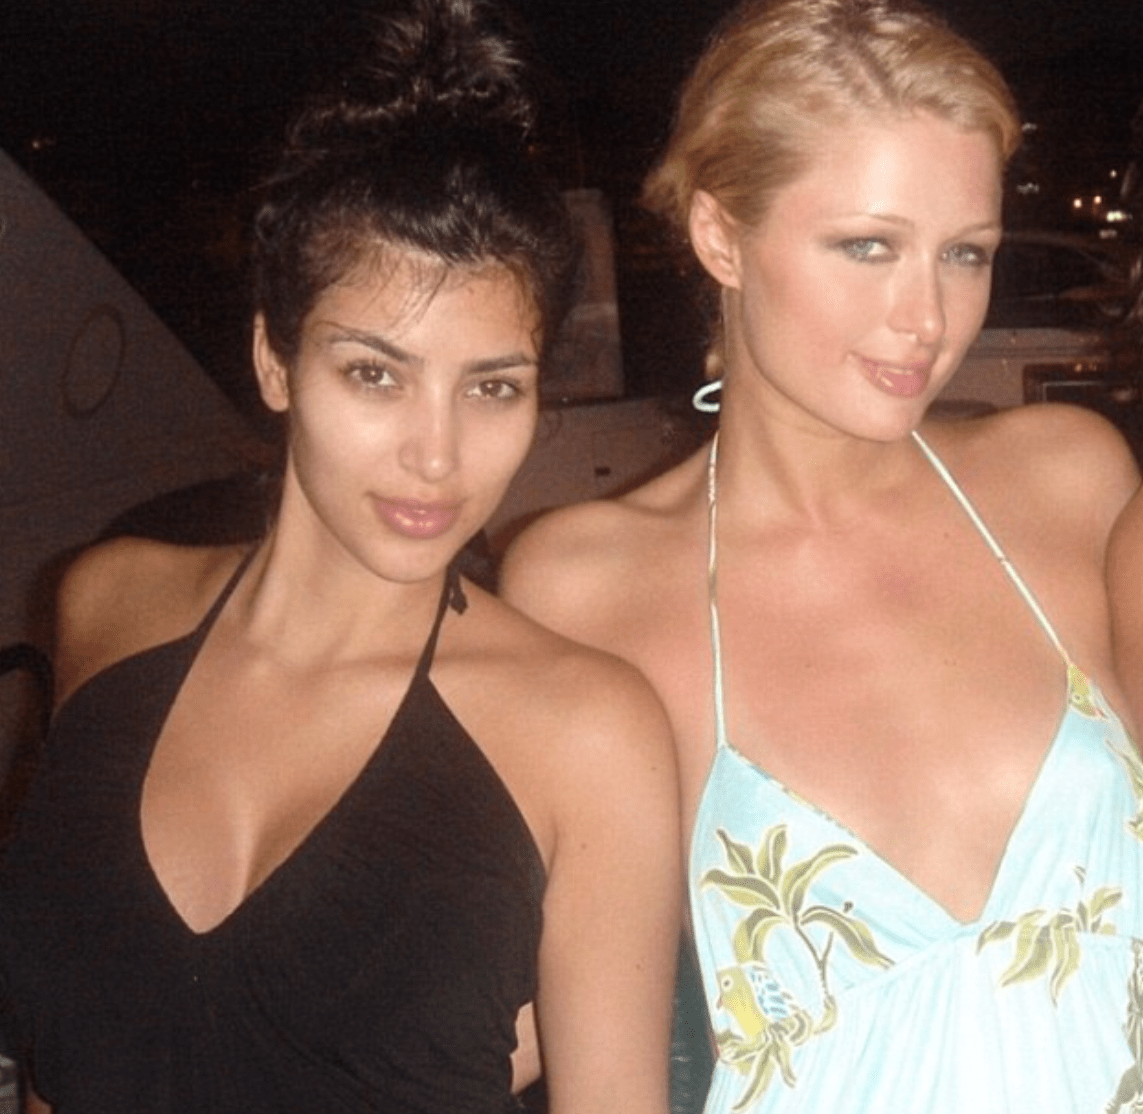 Xxx Kim Kardisan Vidio Hd - Kim Kardashian Was With Former BFF Paris Hilton When Sex Tape Leaked!